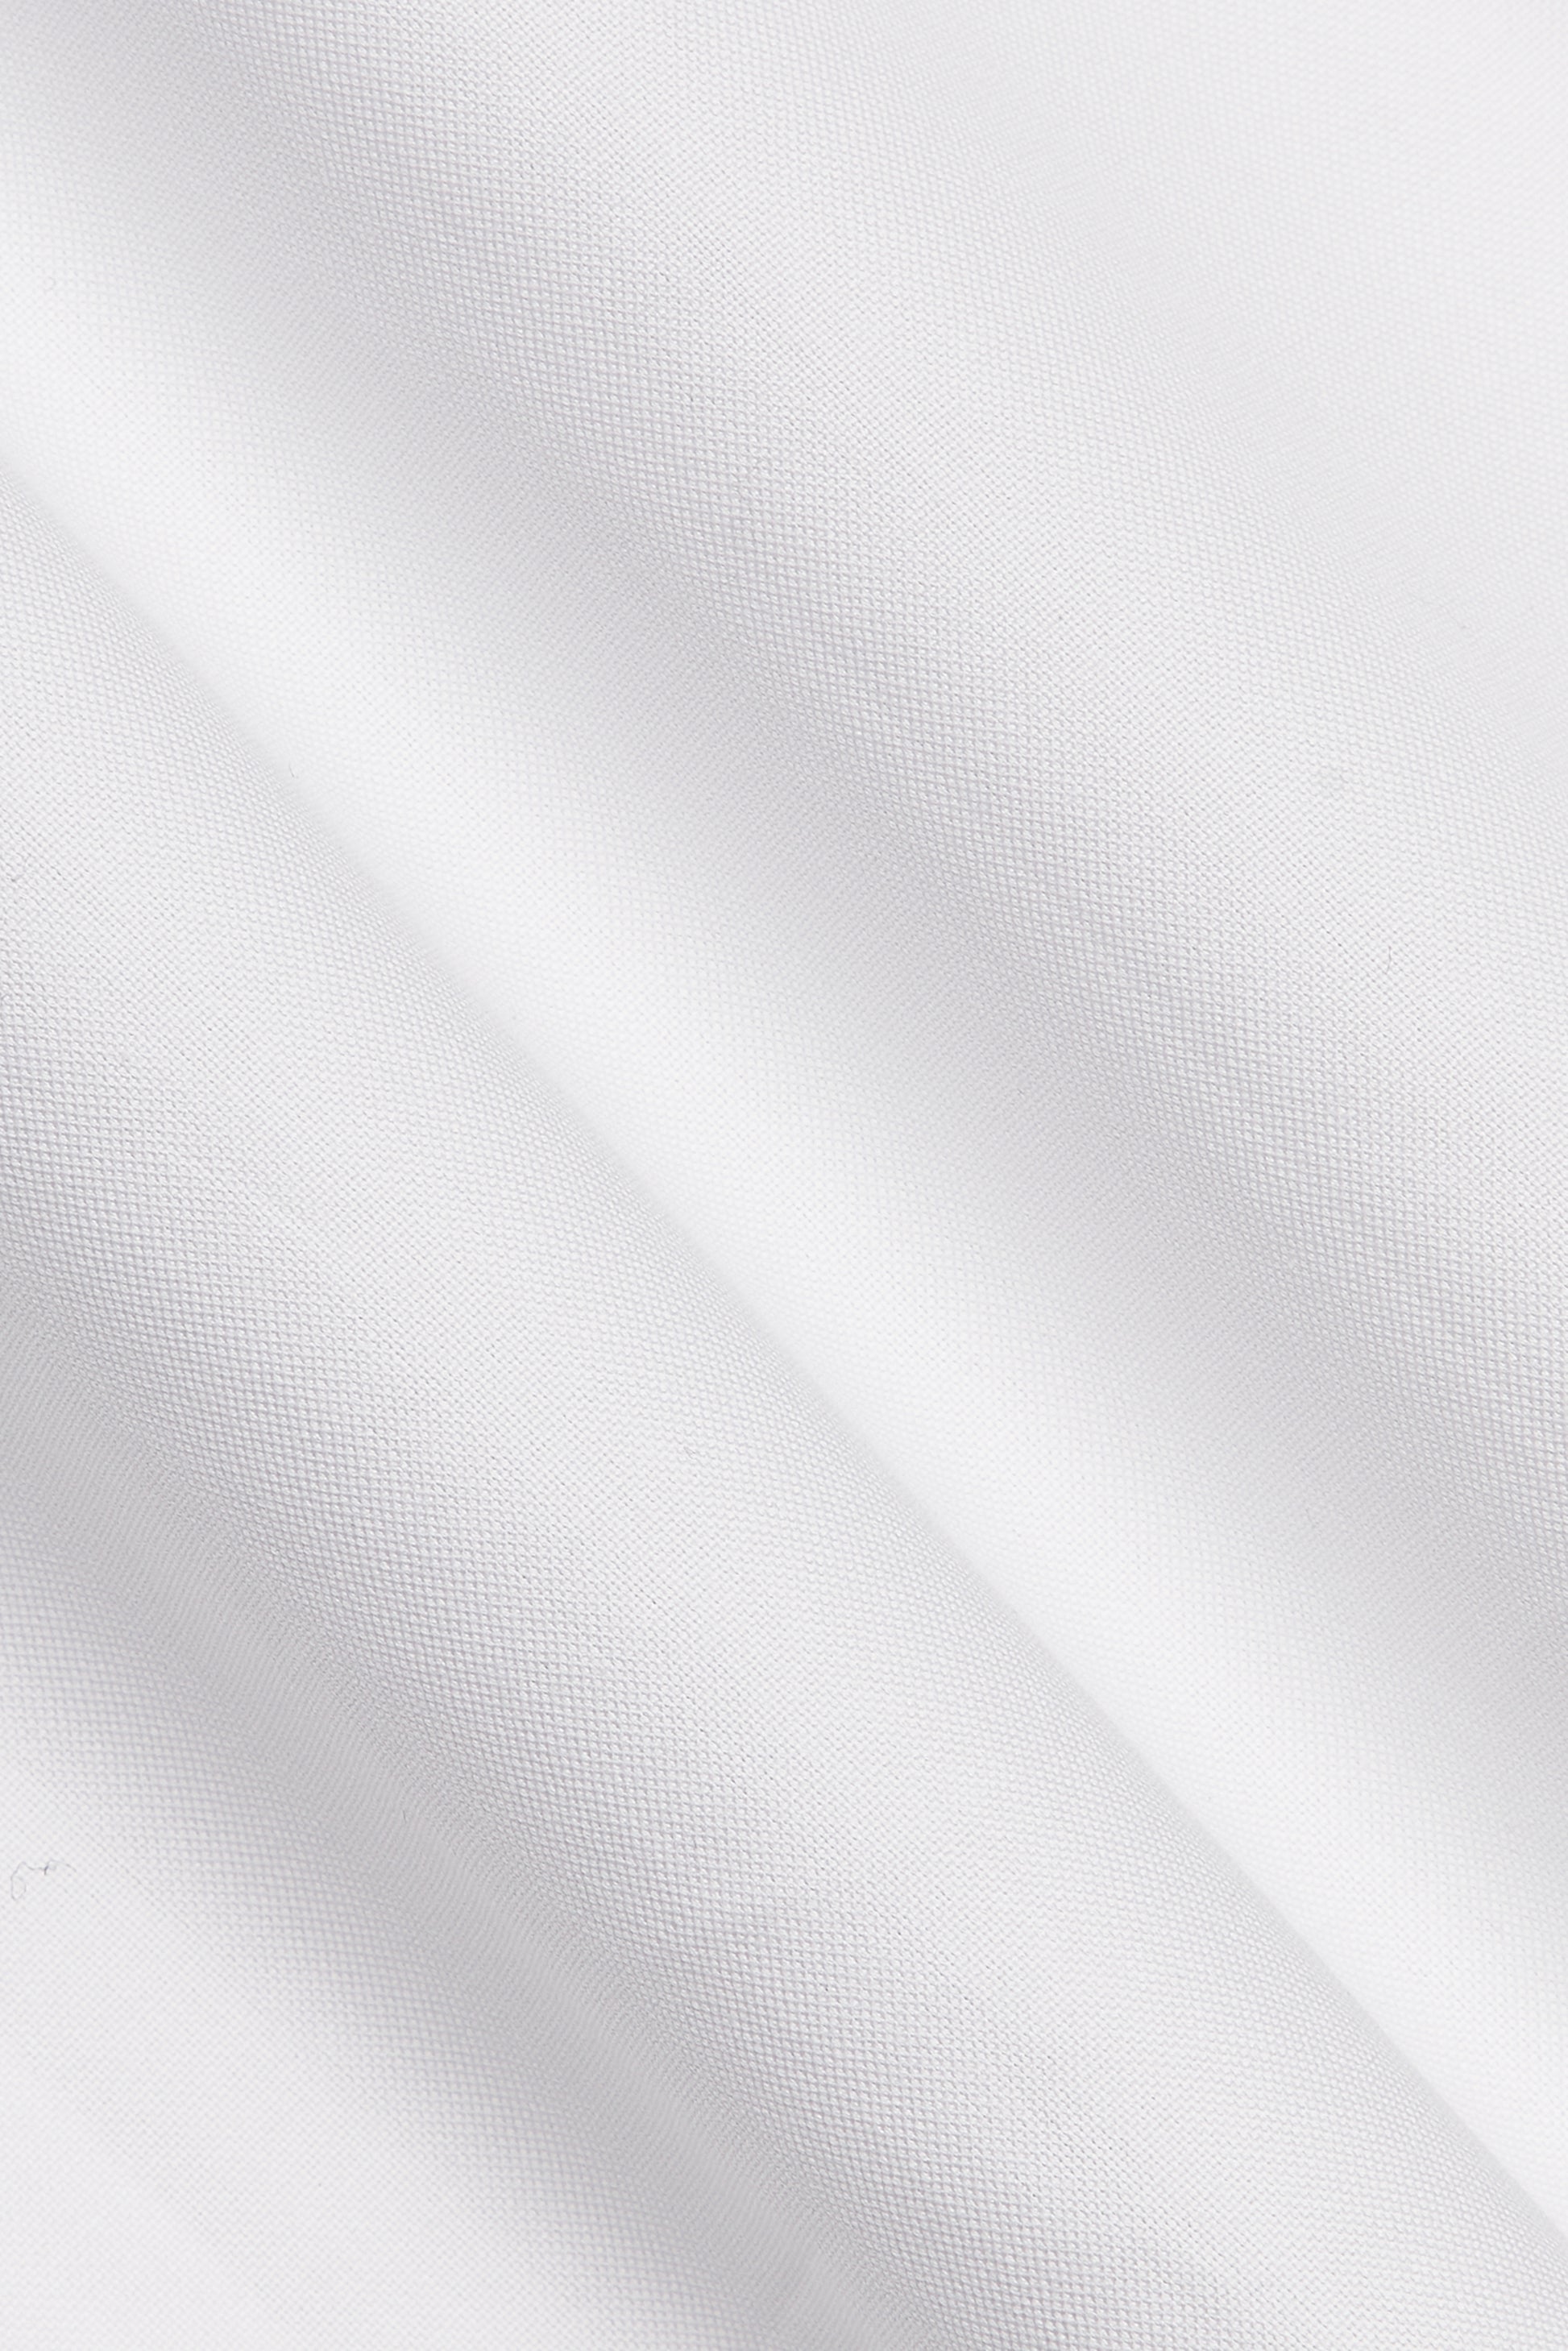 White Egyptian Cotton Pinpoint Oxford Shirt